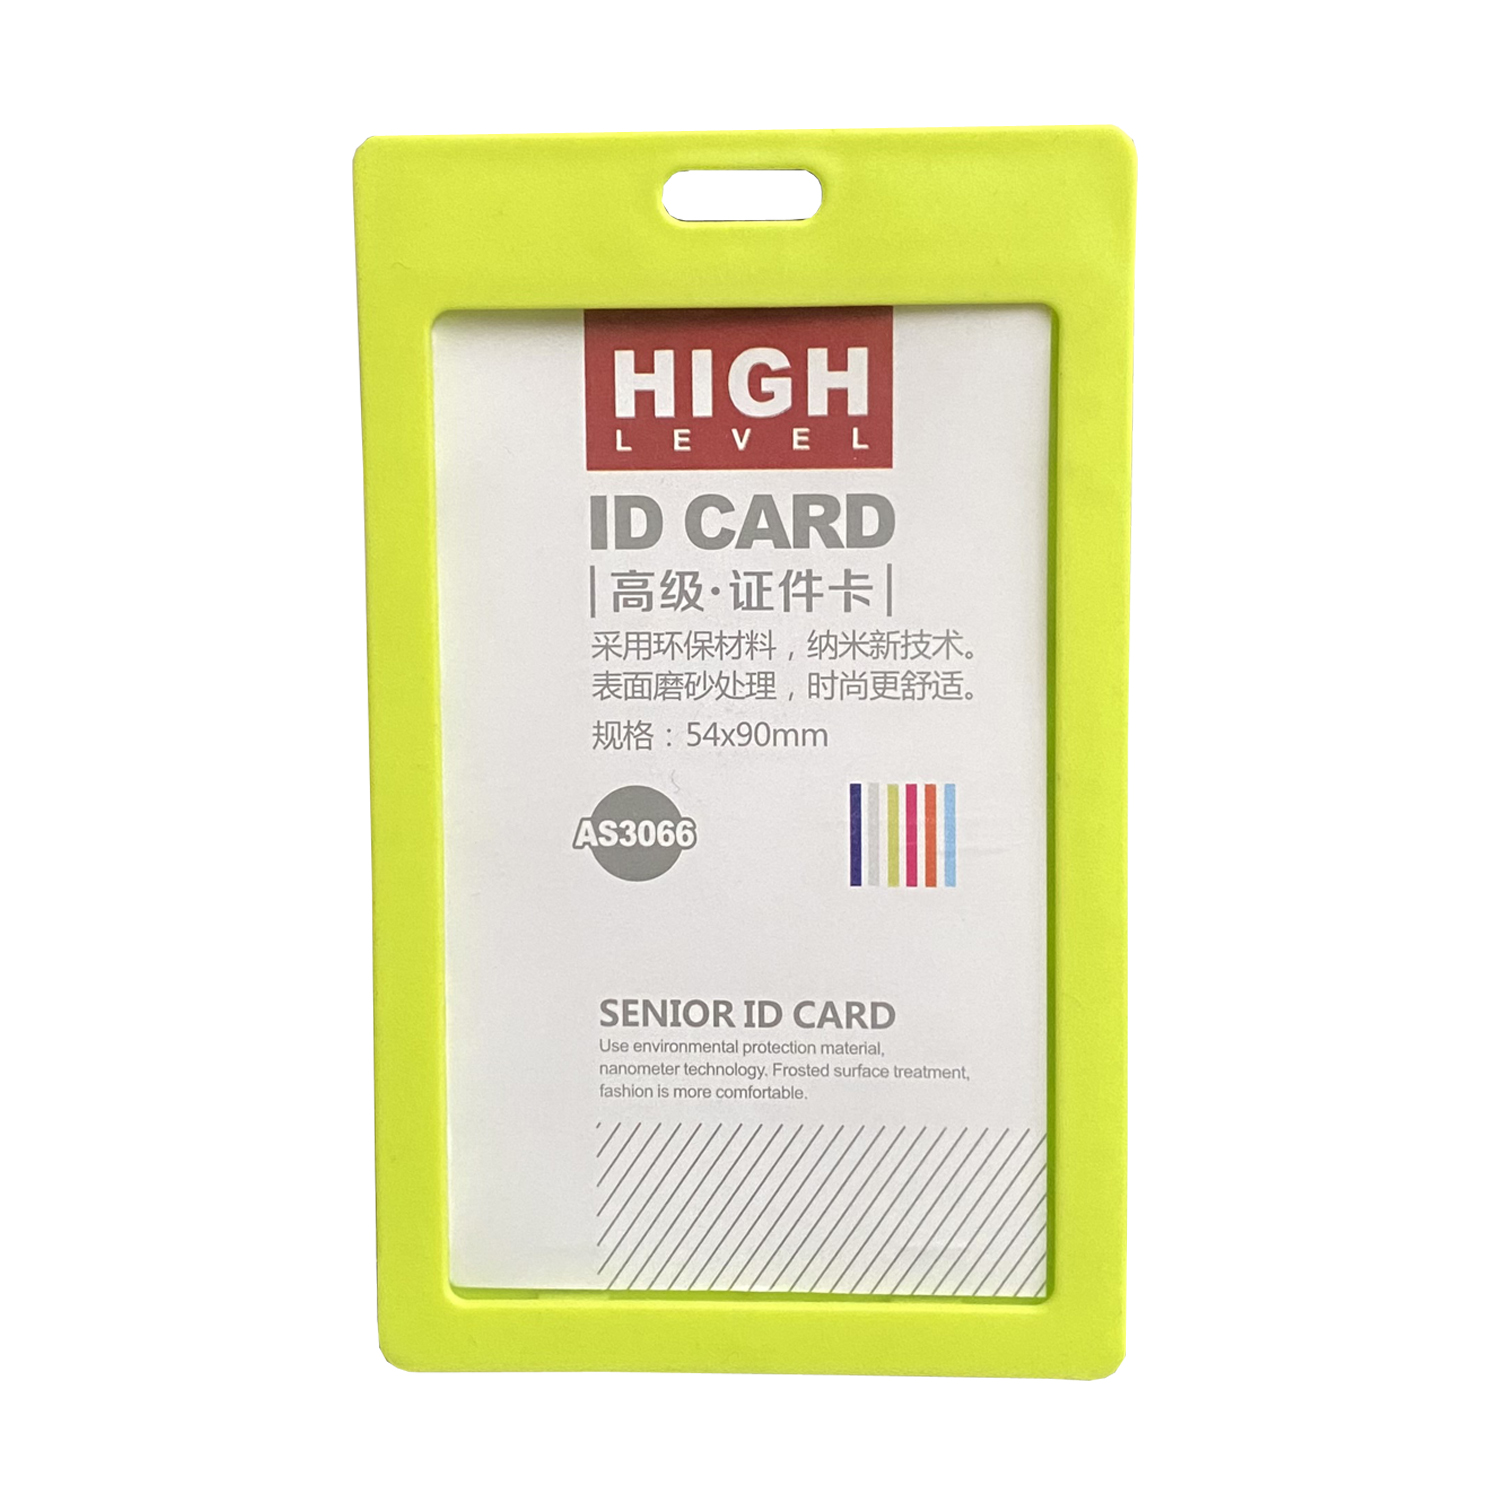 کارت آویز مدل ID CARD بسته 6 عددی